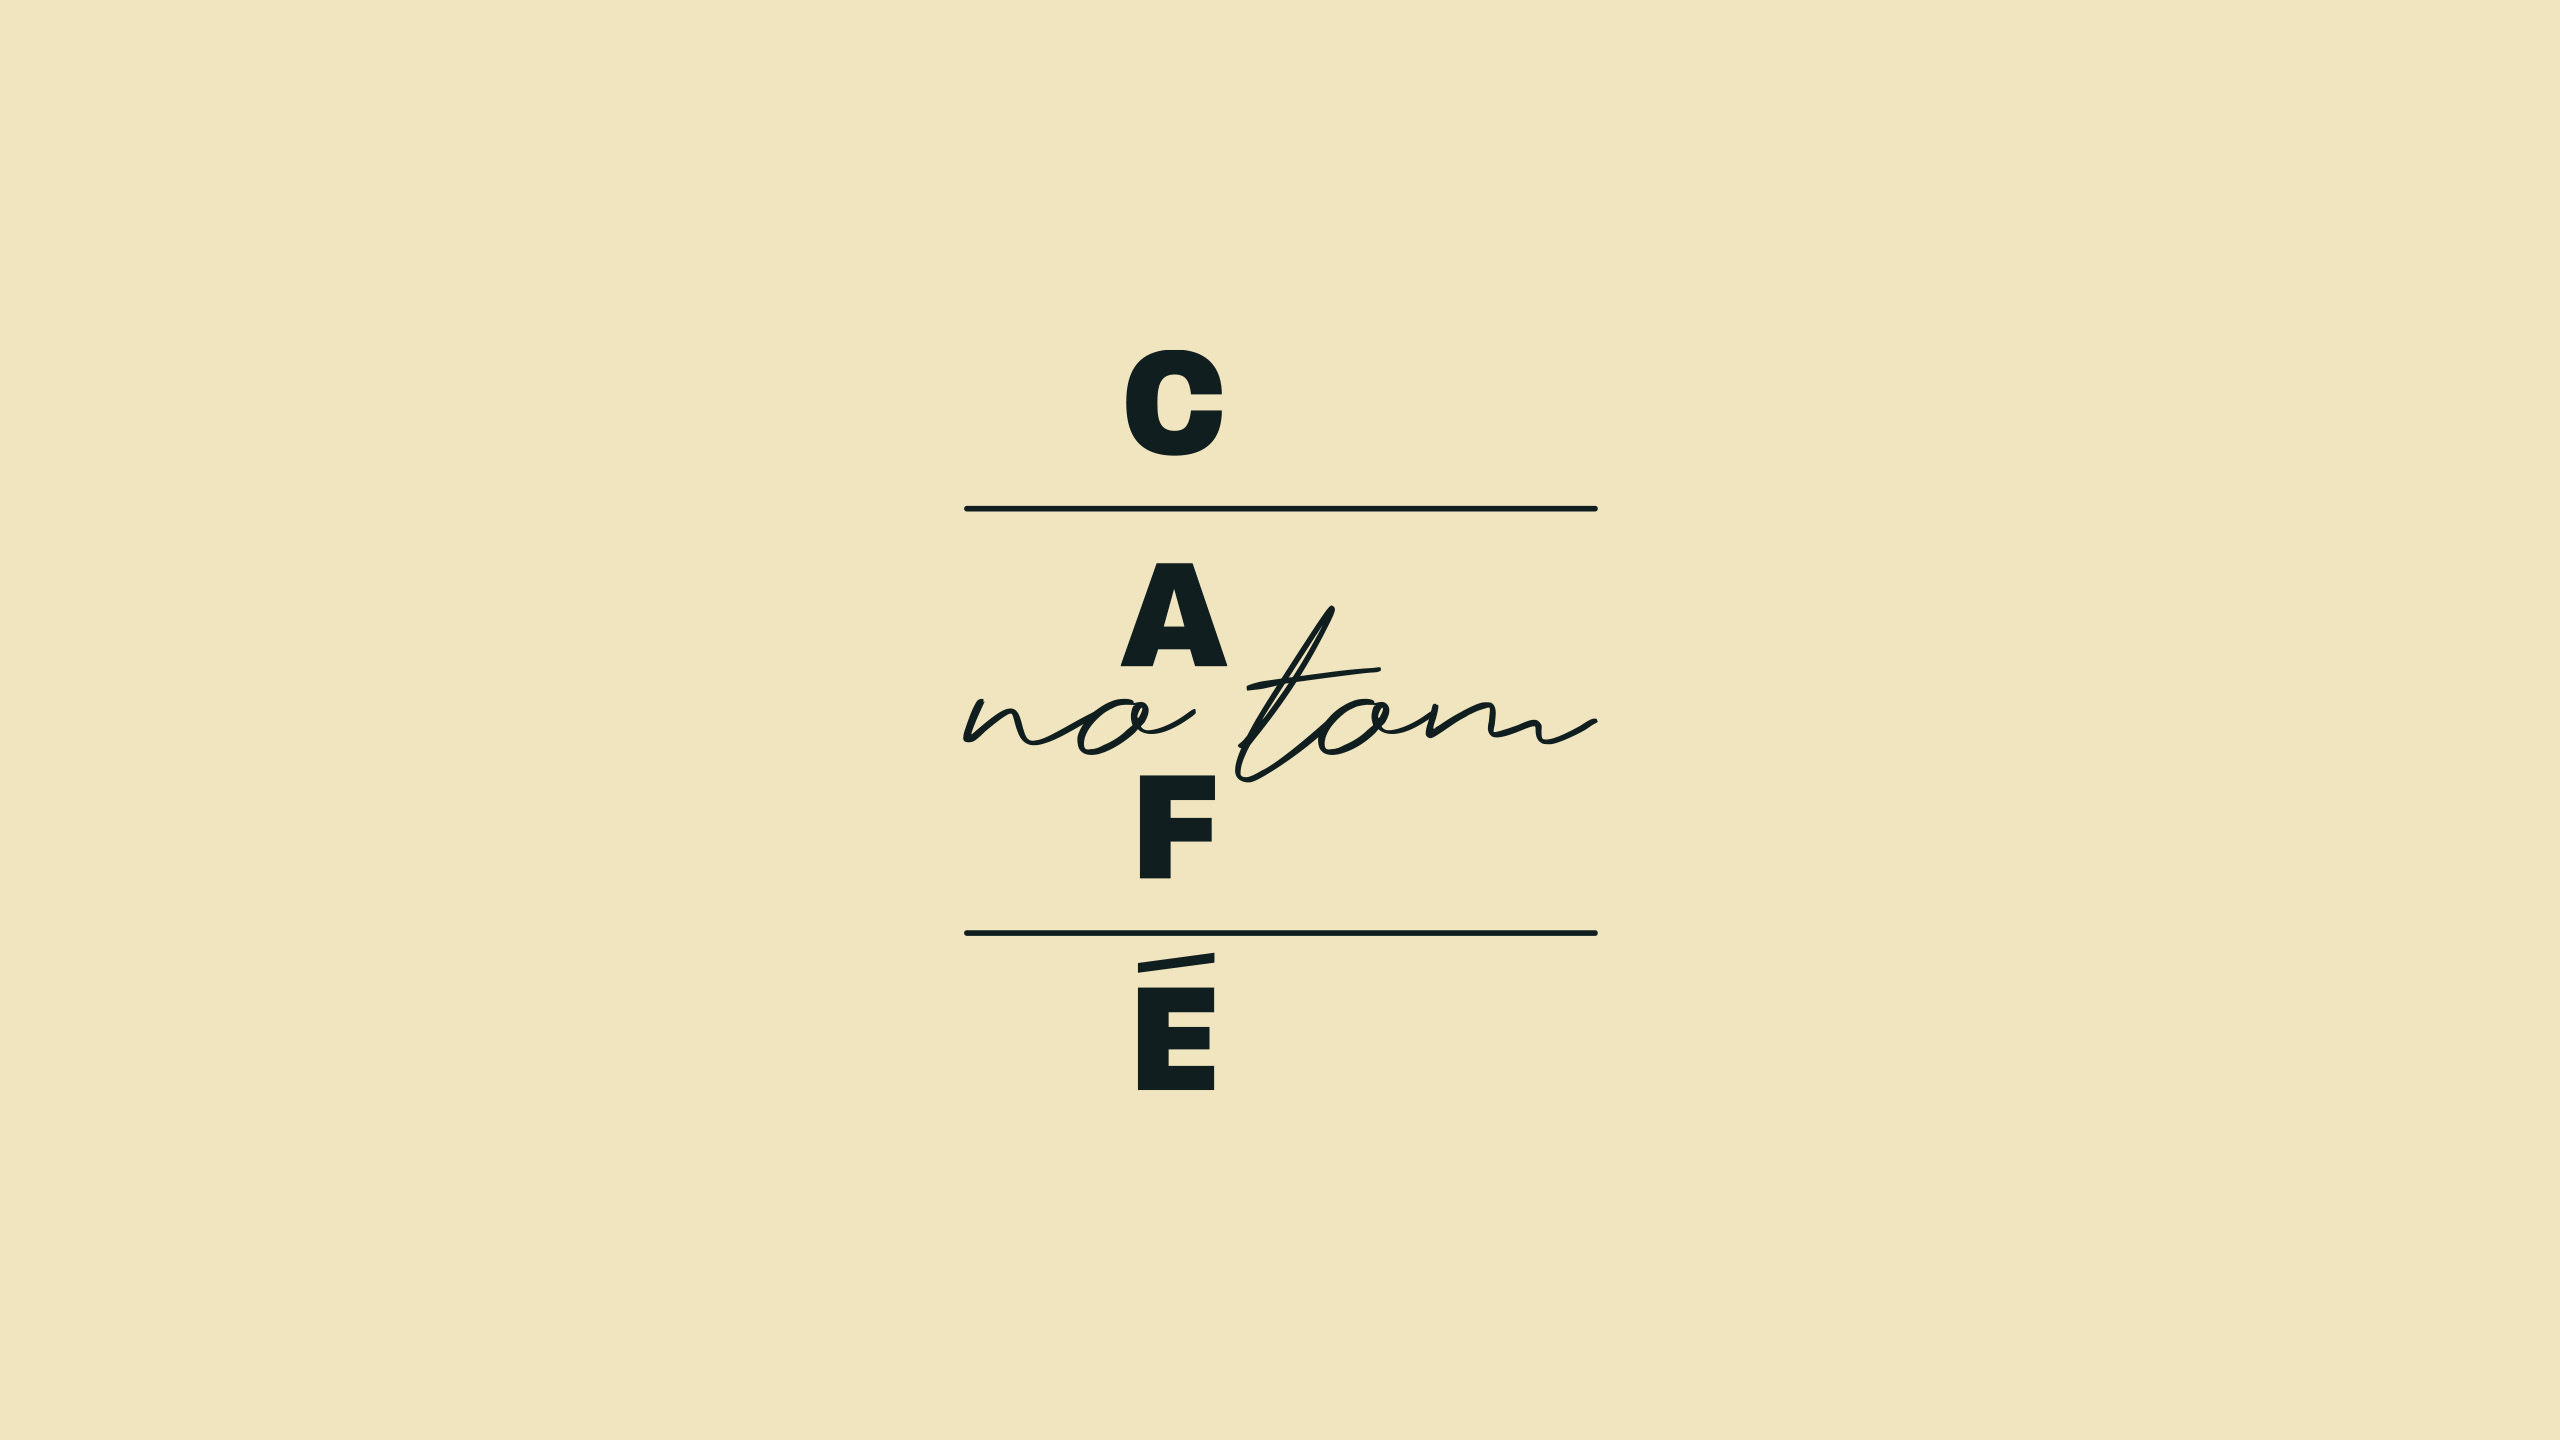 firmorama_cafe-no-tom_02